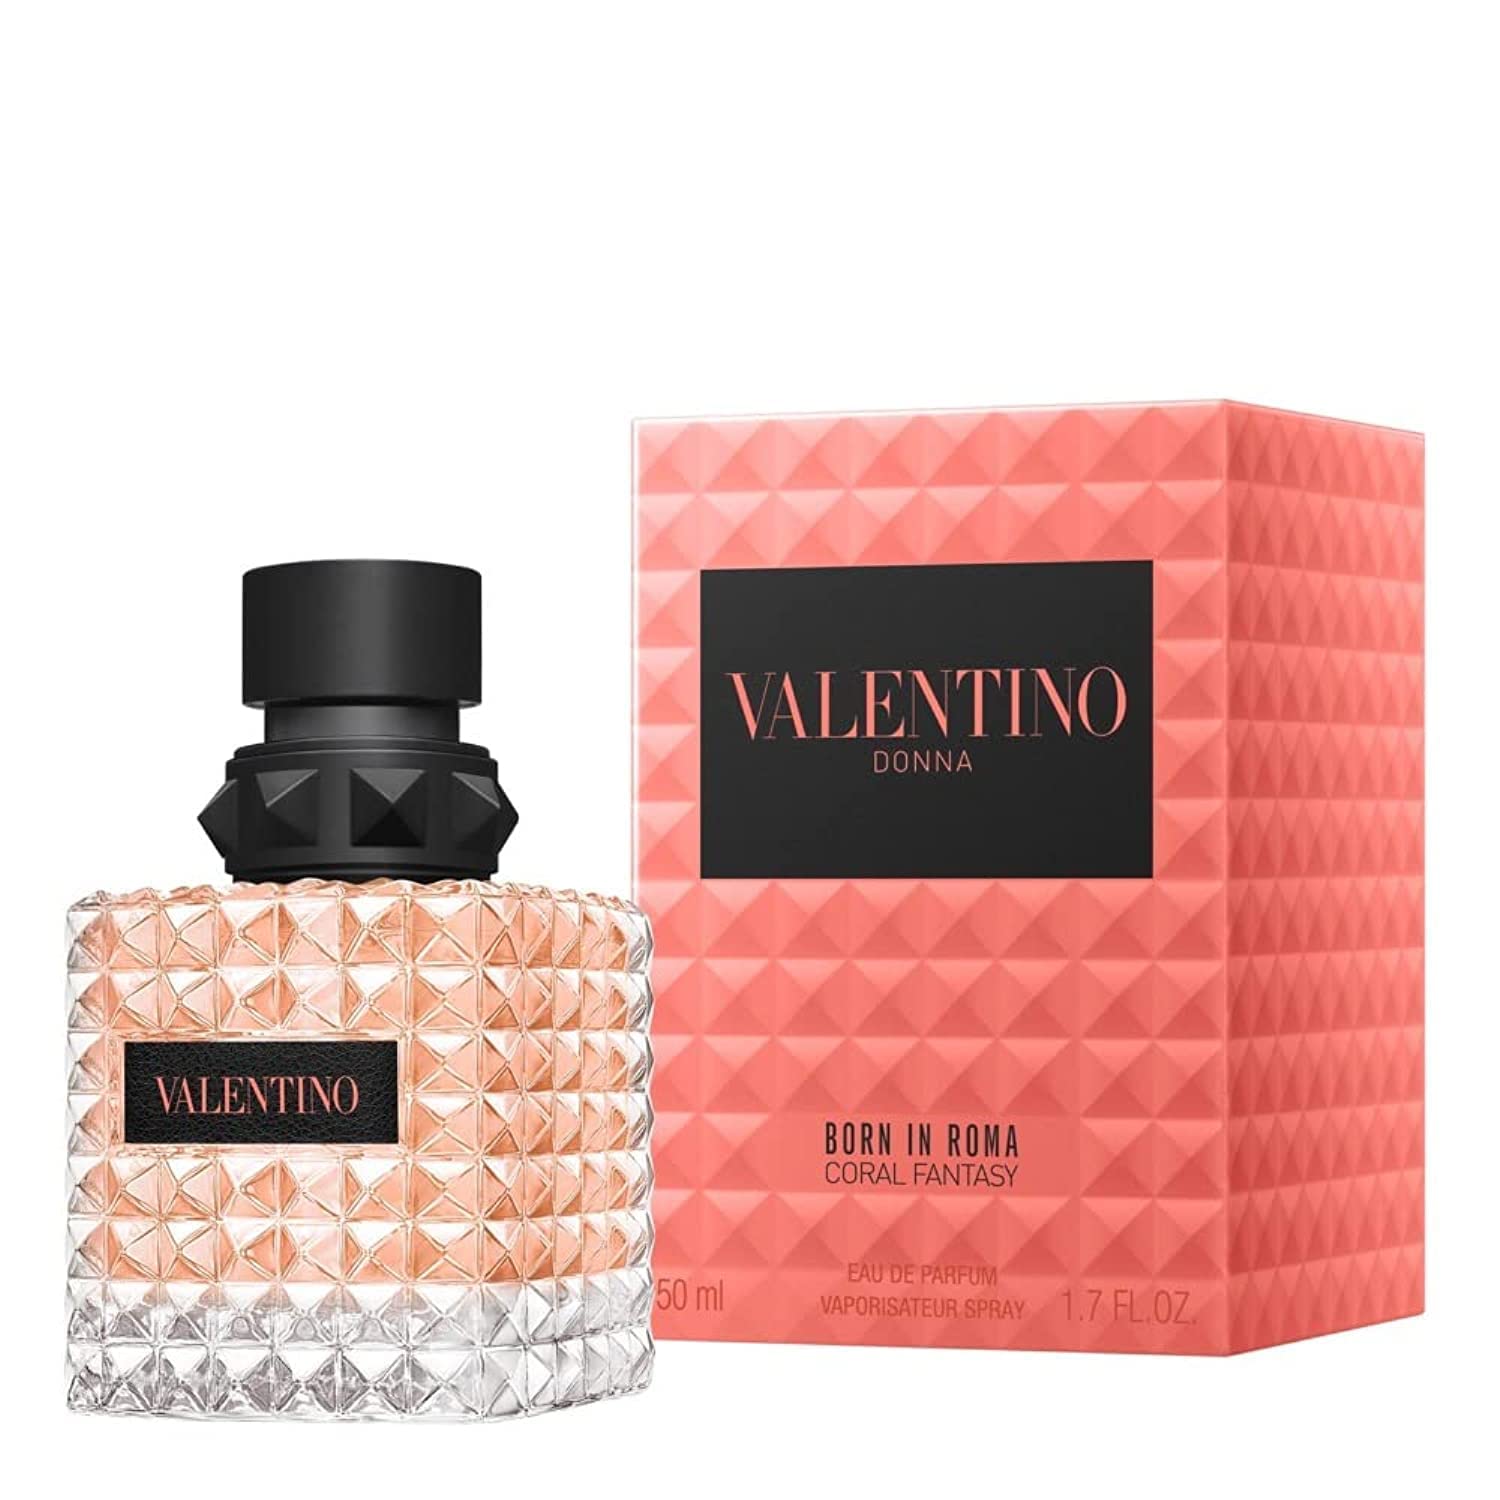 Valentino Donna Born in Roma Coral Fantasy Eau de Parfum 1.7 oz 50 mL